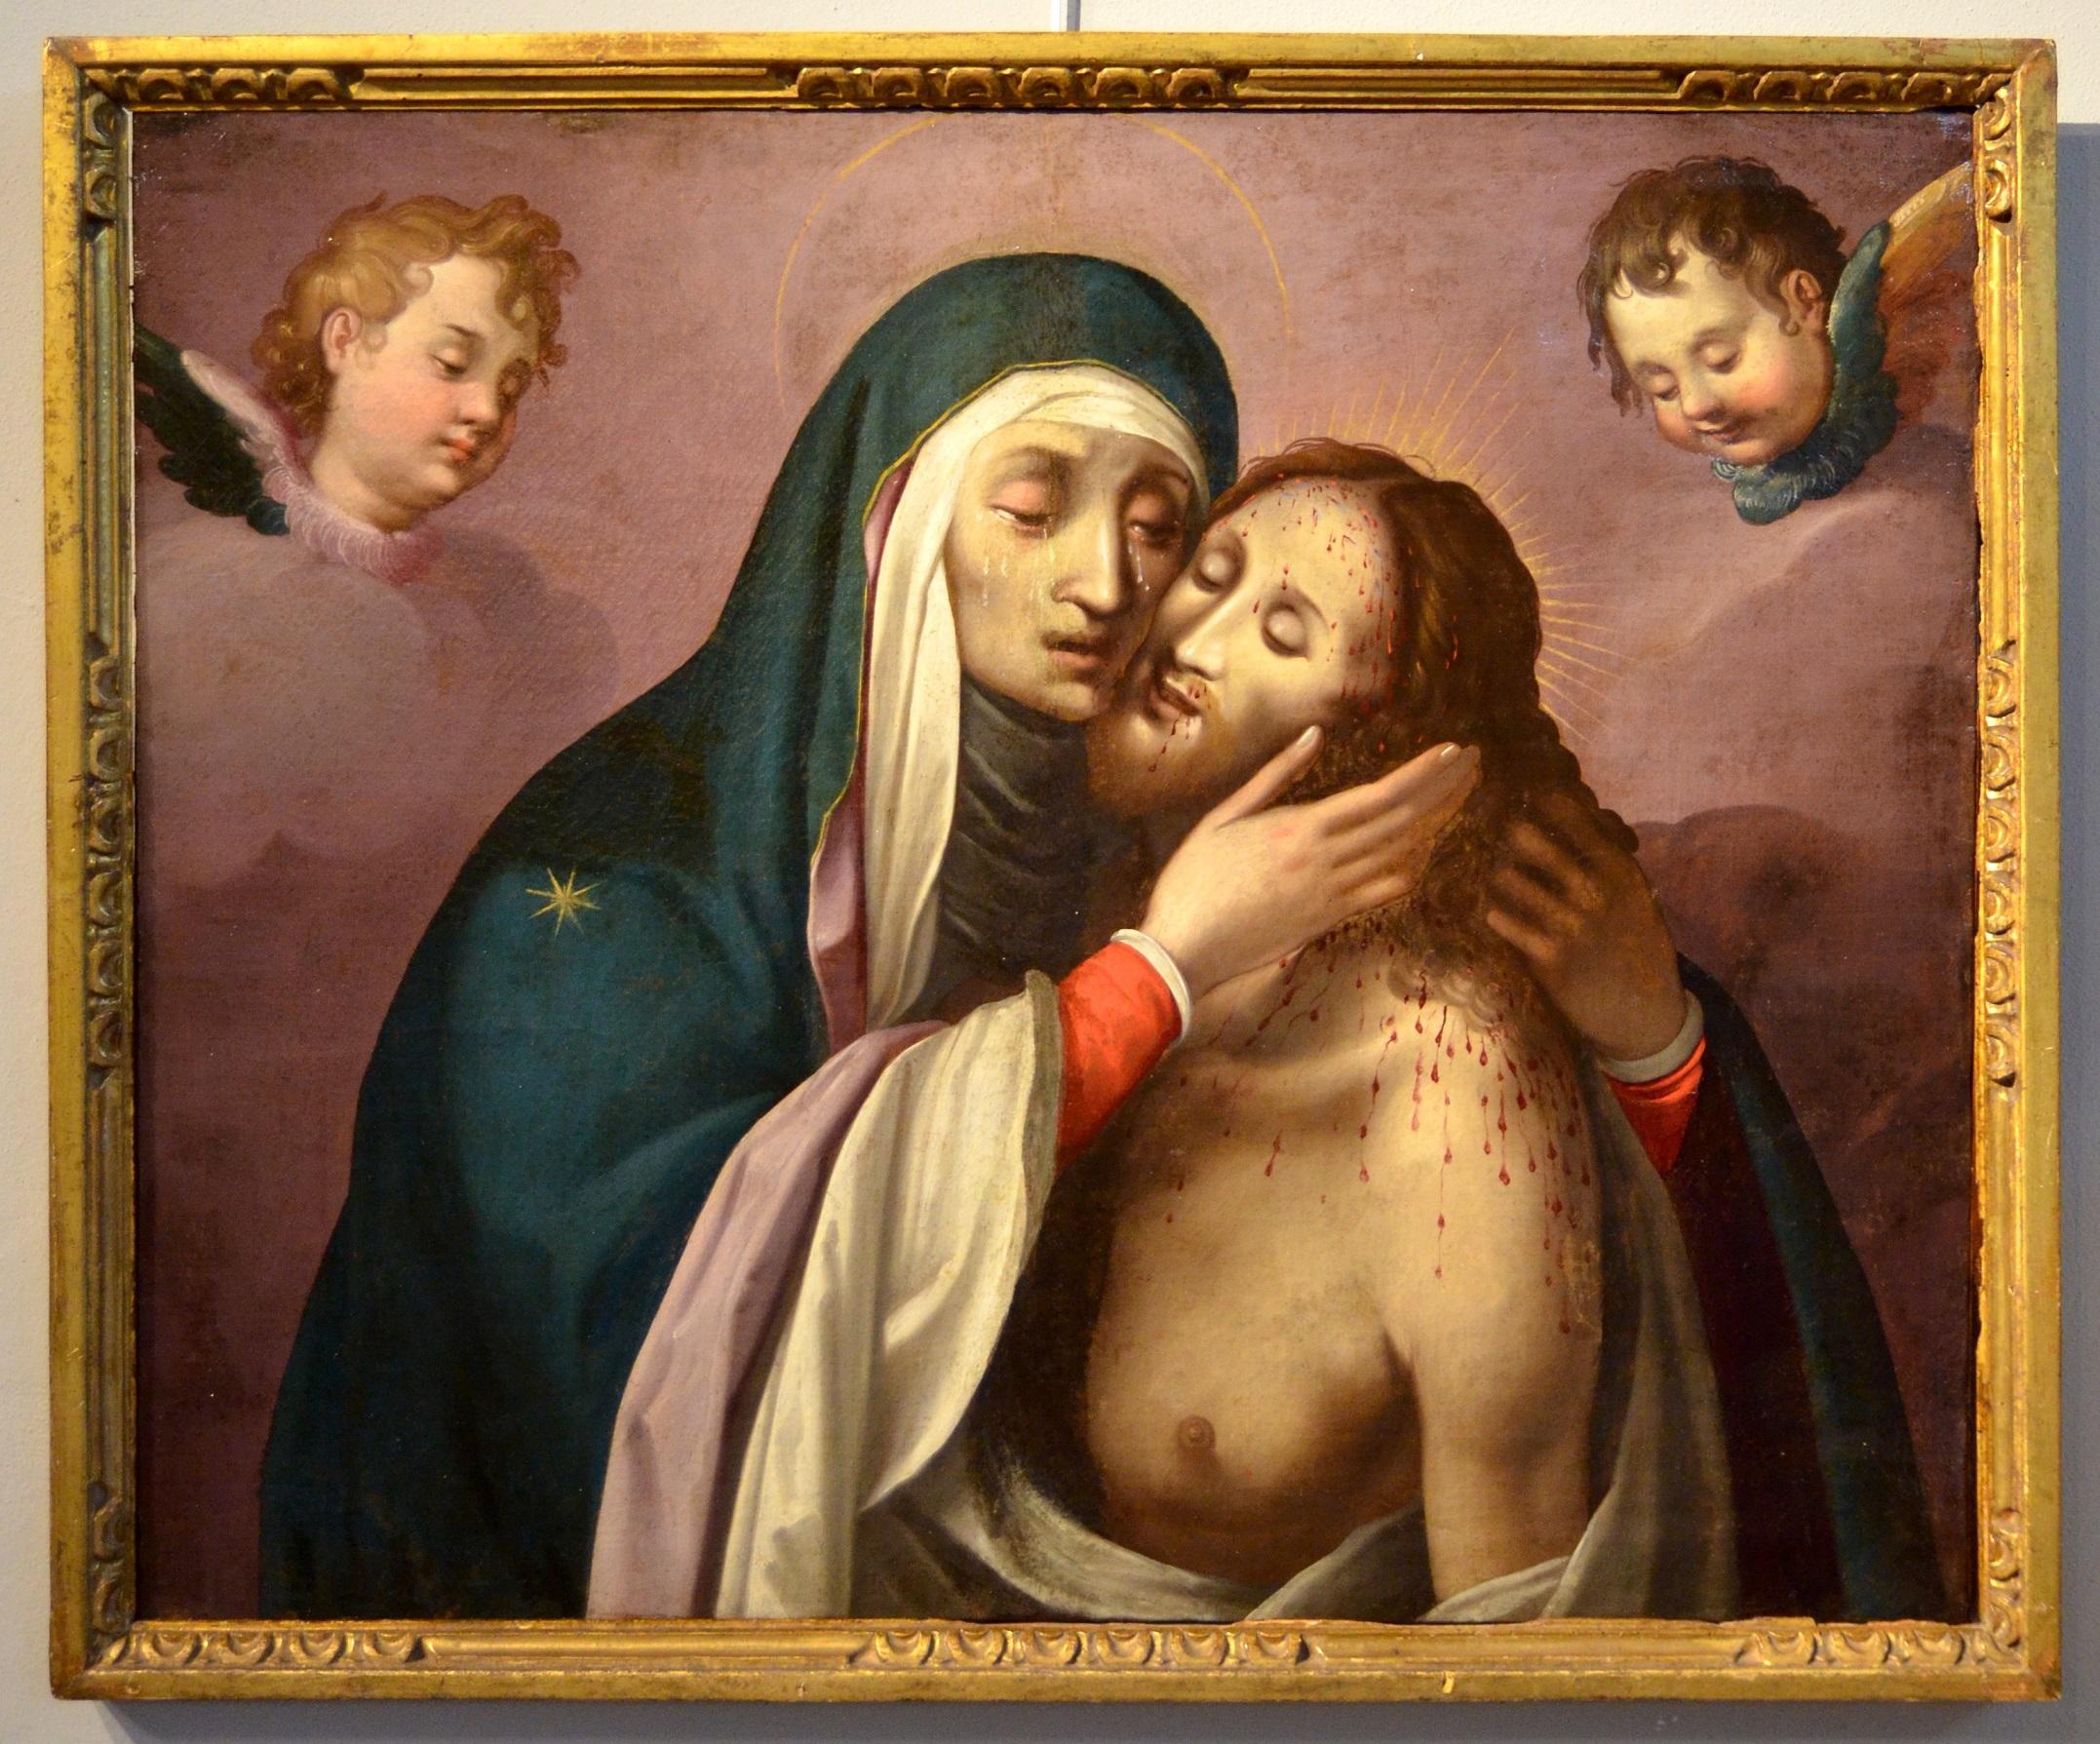 Piet Cherubs Gemälde Öl auf Leinwand Religiös Rom 16/17. Jahrhundert Michelangelo – Painting von Workshop of Scipione Pulzone (Gaeta 1550 - Rome 1598)